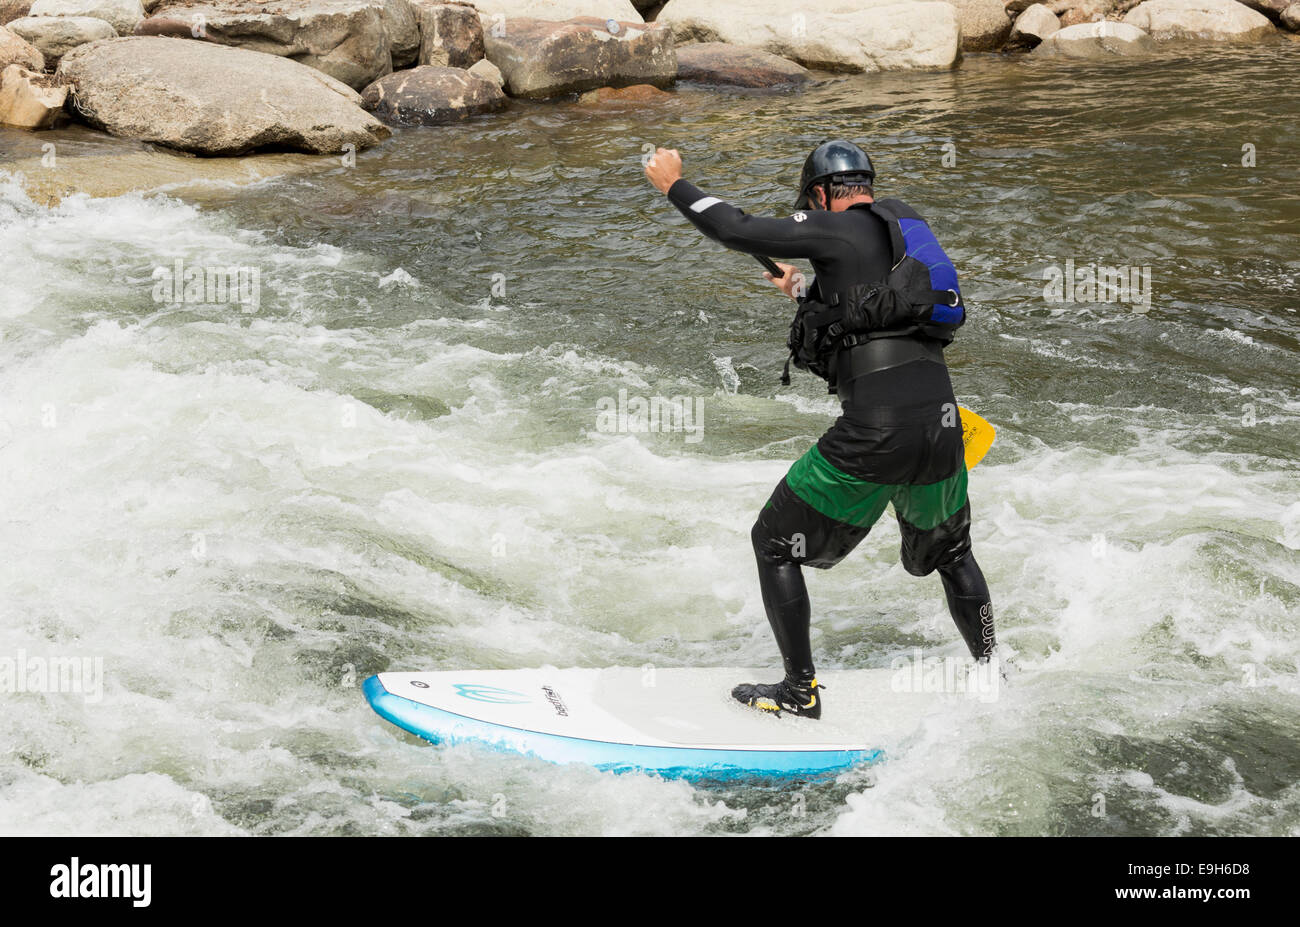 Hombre en un stand-up paddle board en los rápidos del Río Arkansas en Buena Vista, Colorado, EE.UU. Foto de stock